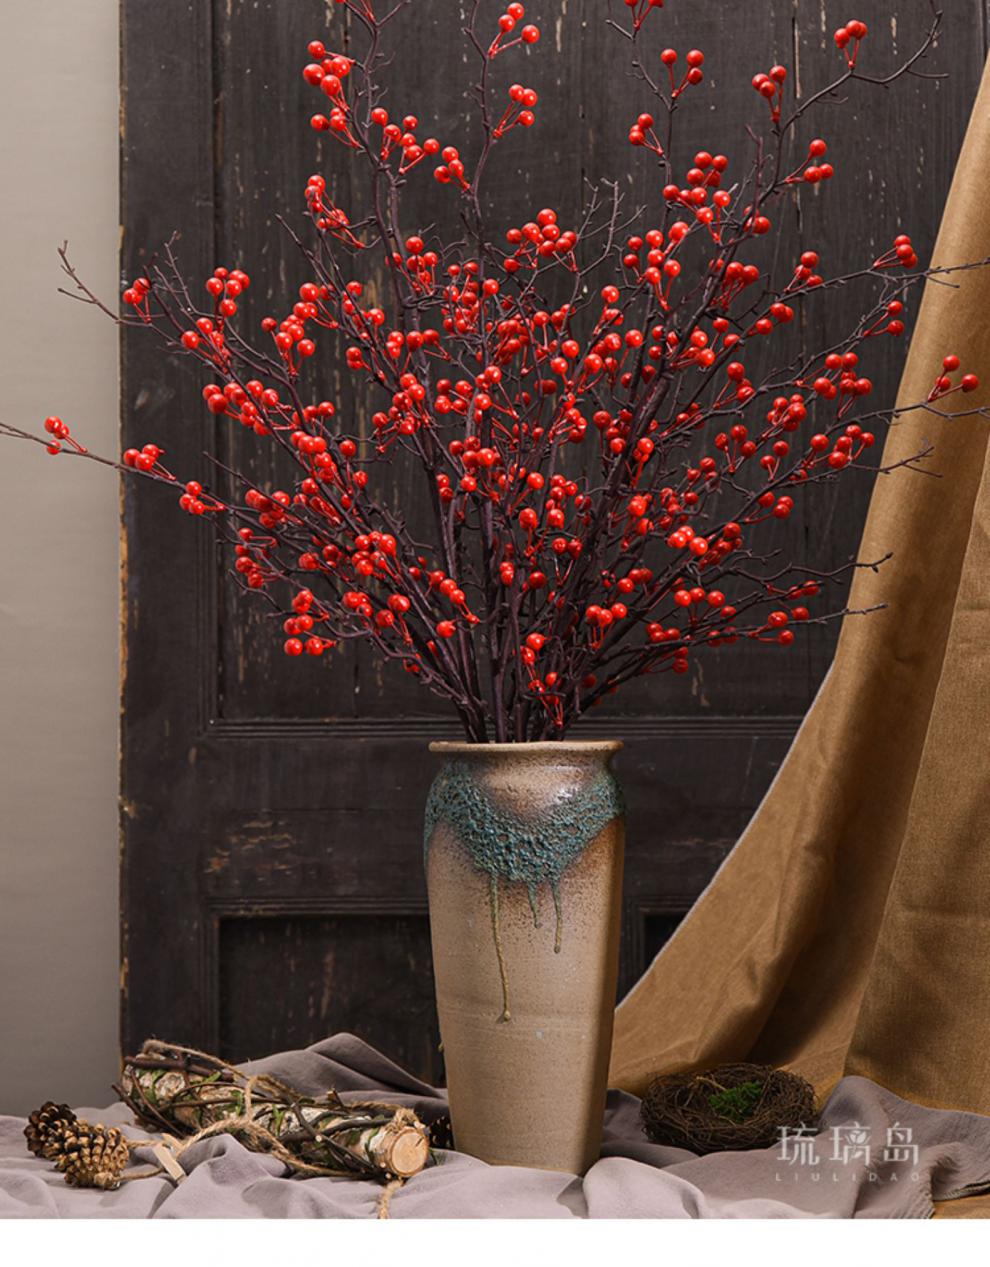 冬青红果仿真 北美冬青红果果带花瓶幸运果仿真过年插花红色装饰客厅